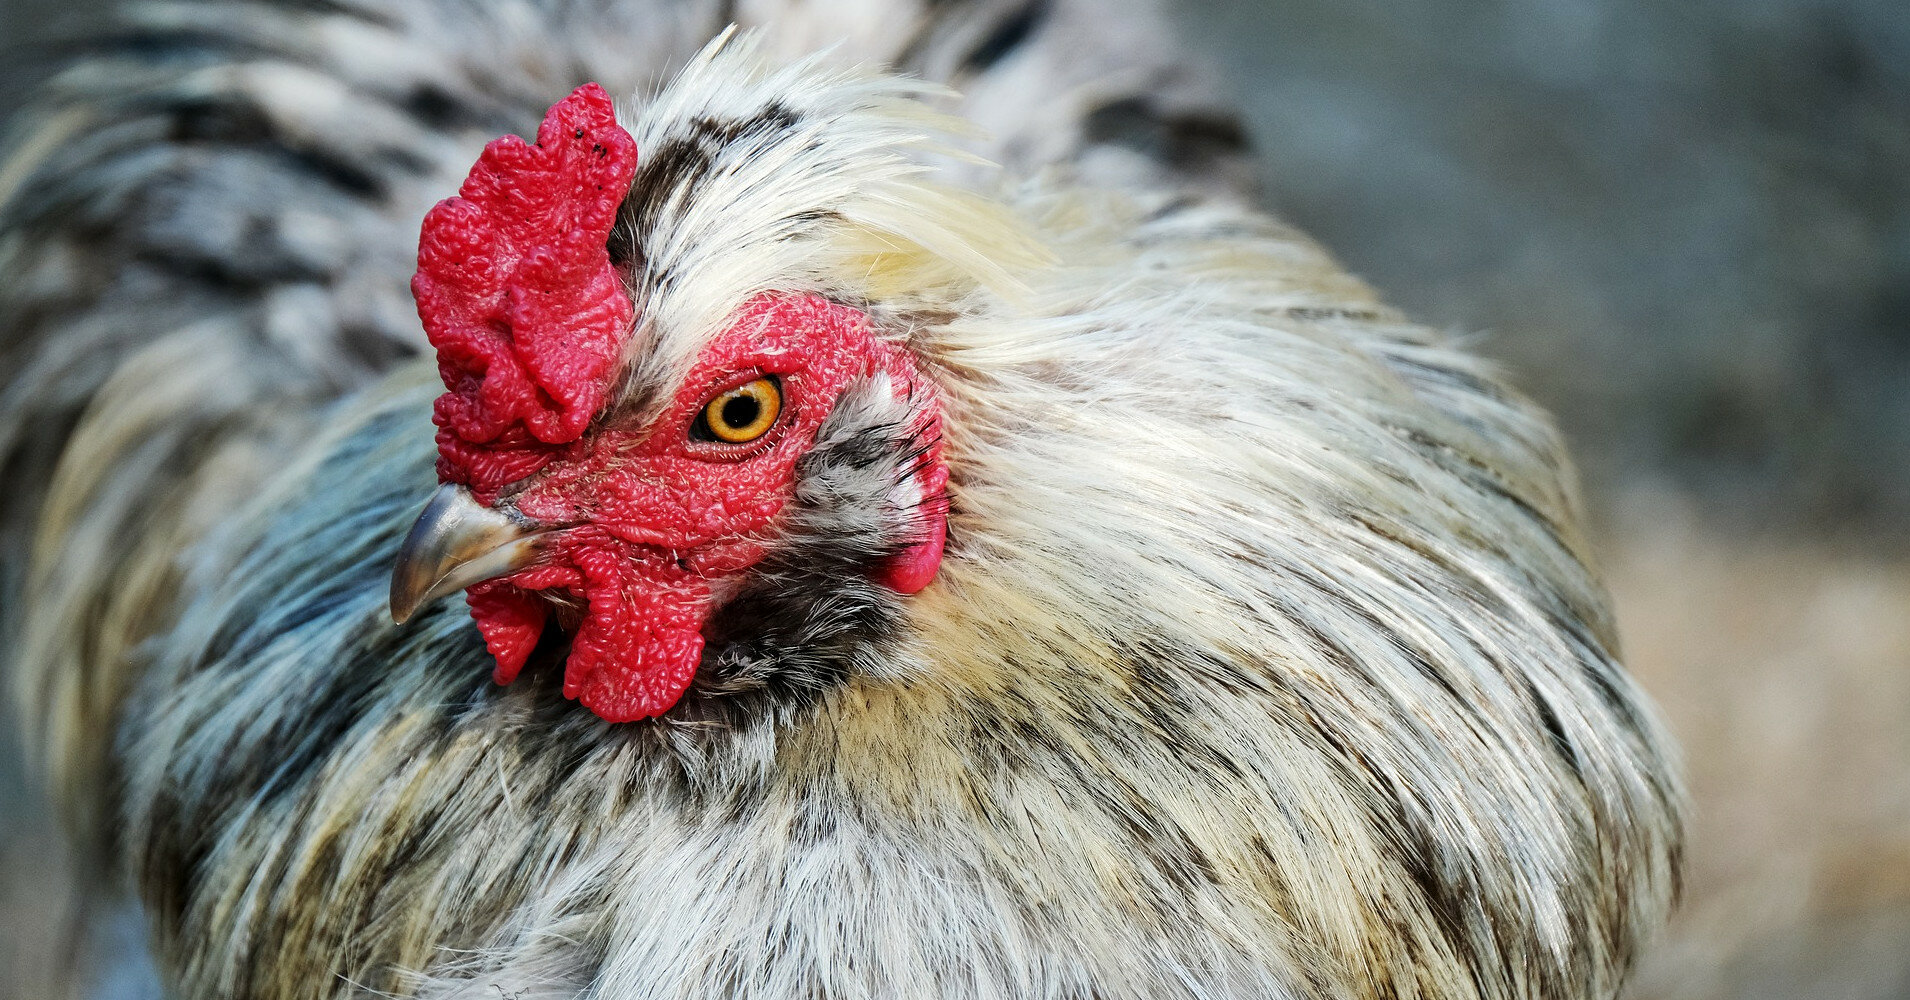 В Украину завезли из Польши более 1,5 тонны опасной курятины